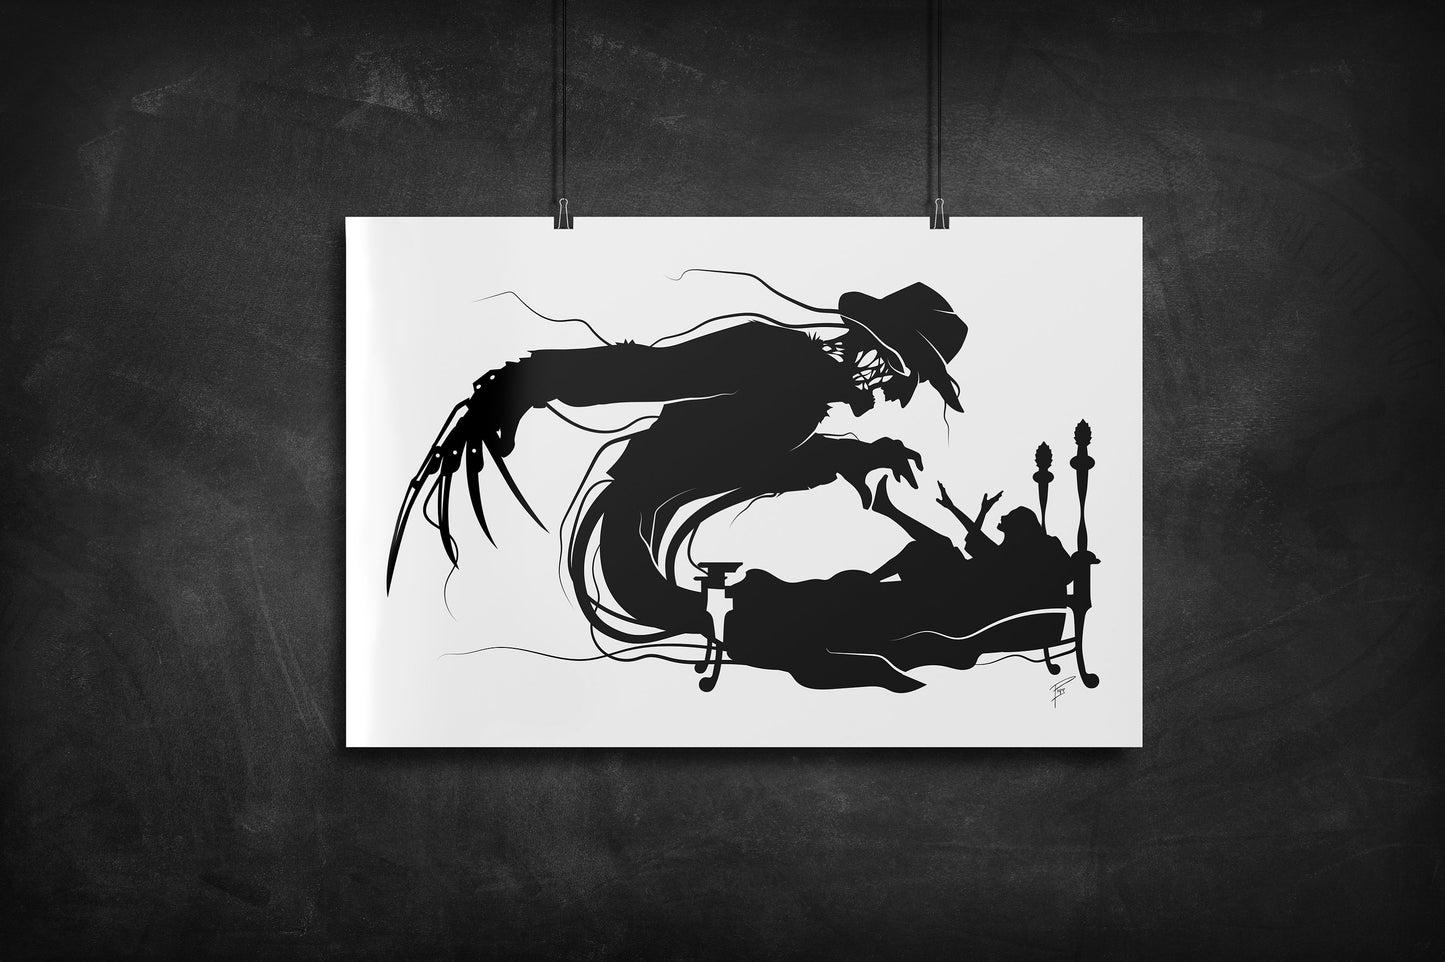 Freddy Kruger - Nightmare on Elm Street silhouette art print